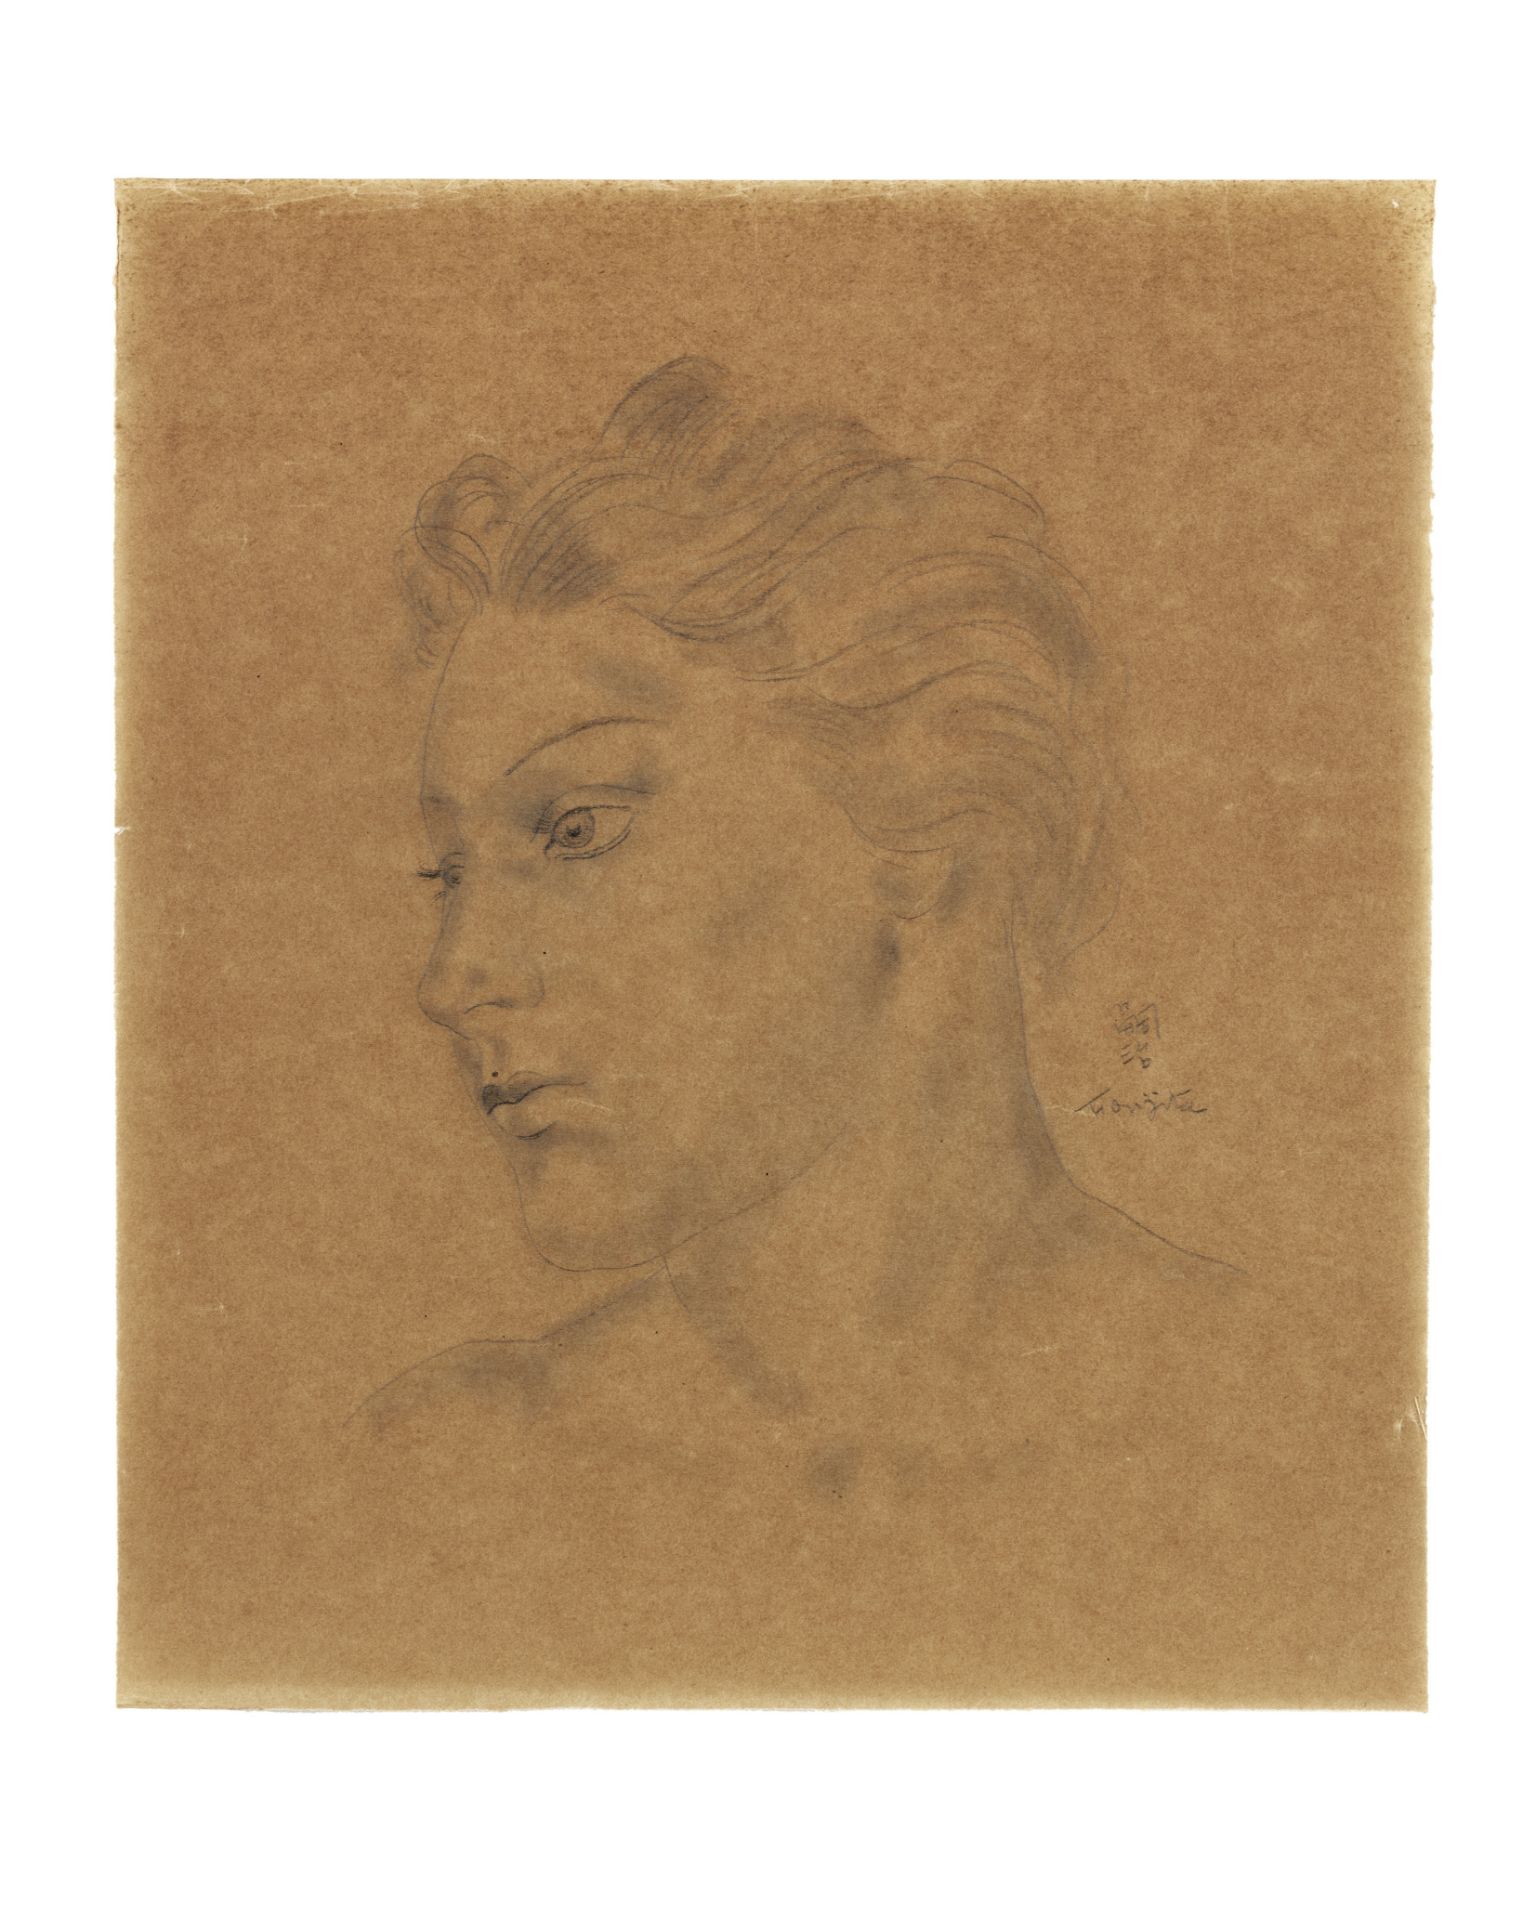 LÉONARD TSUGUHARU FOUJITA (1886-1968) Portrait de jeune femme (Executed in 1928)